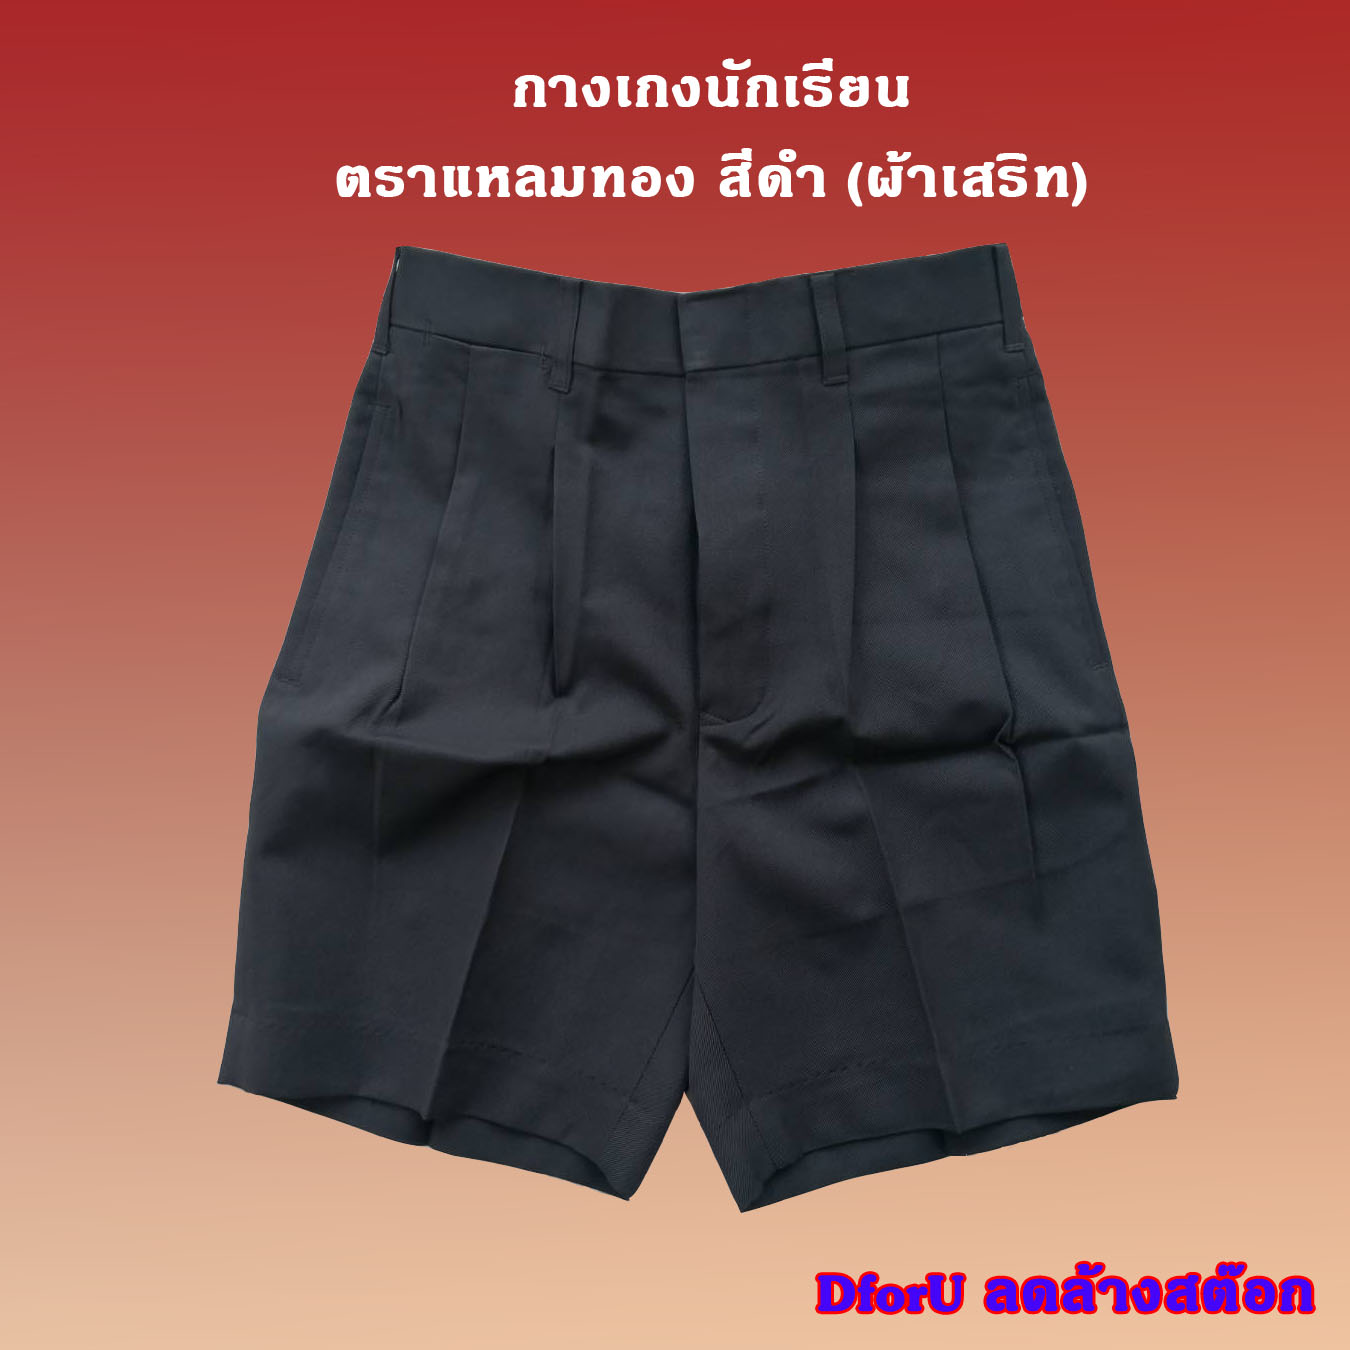 กางเกงนักเรียนชาย  ตราแหลมทอง สีดำ (ผ้าเสริท)  ขนาด : (ยาวxเอว) เอว 27-30 นิ้ว ราคาประหยัด